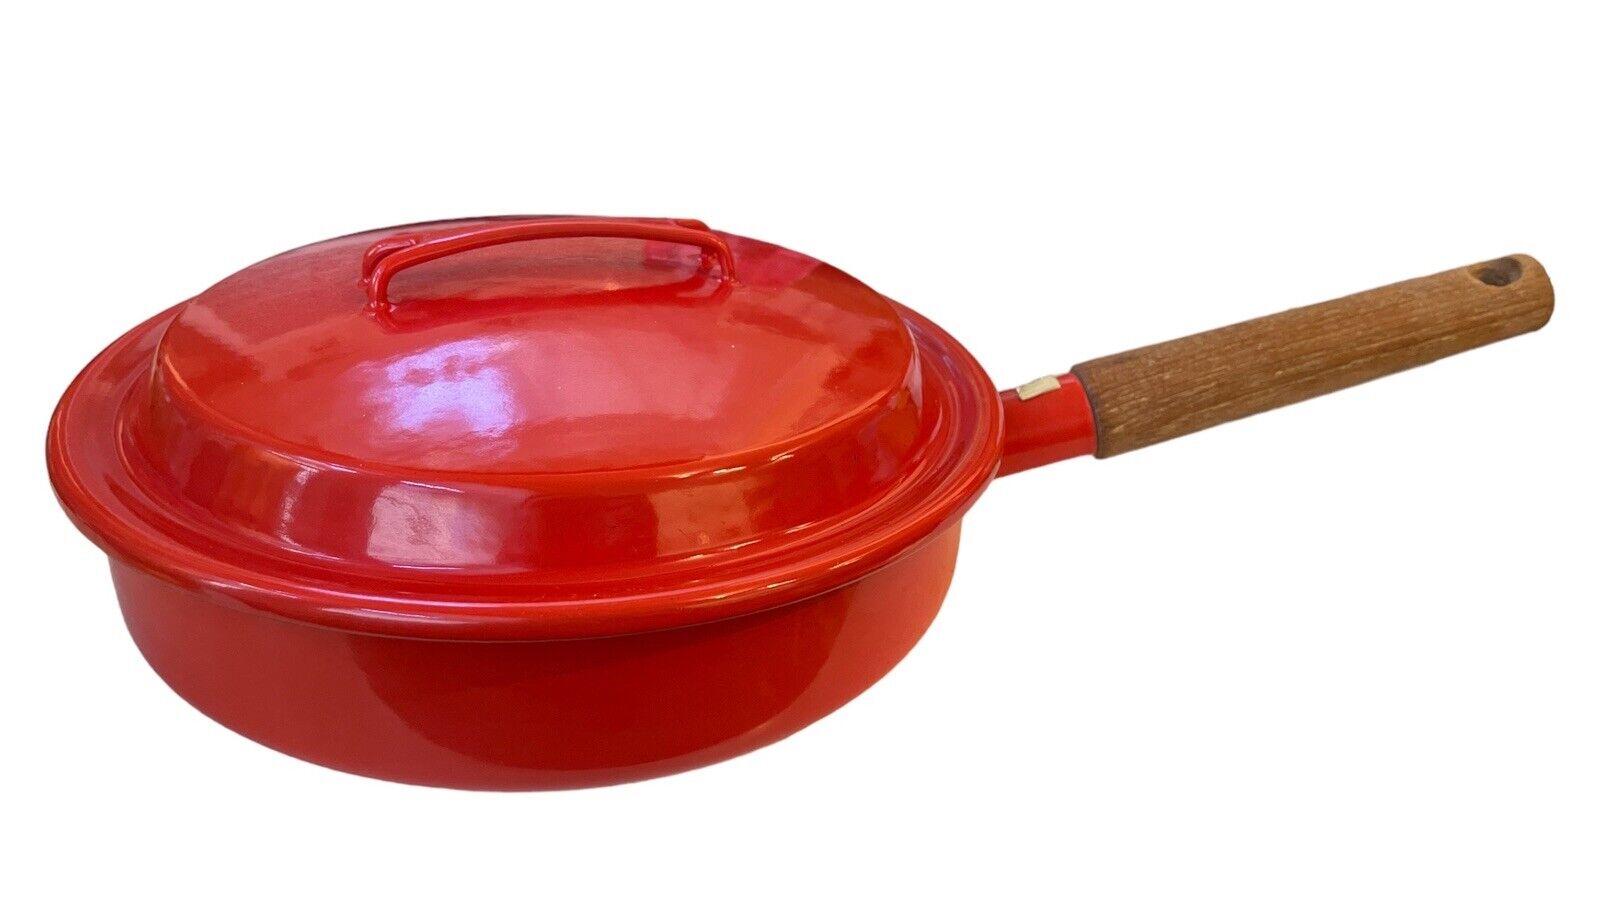 Vintage Arabia Of Finland Vintage Red Enameled Large Pan With Lid